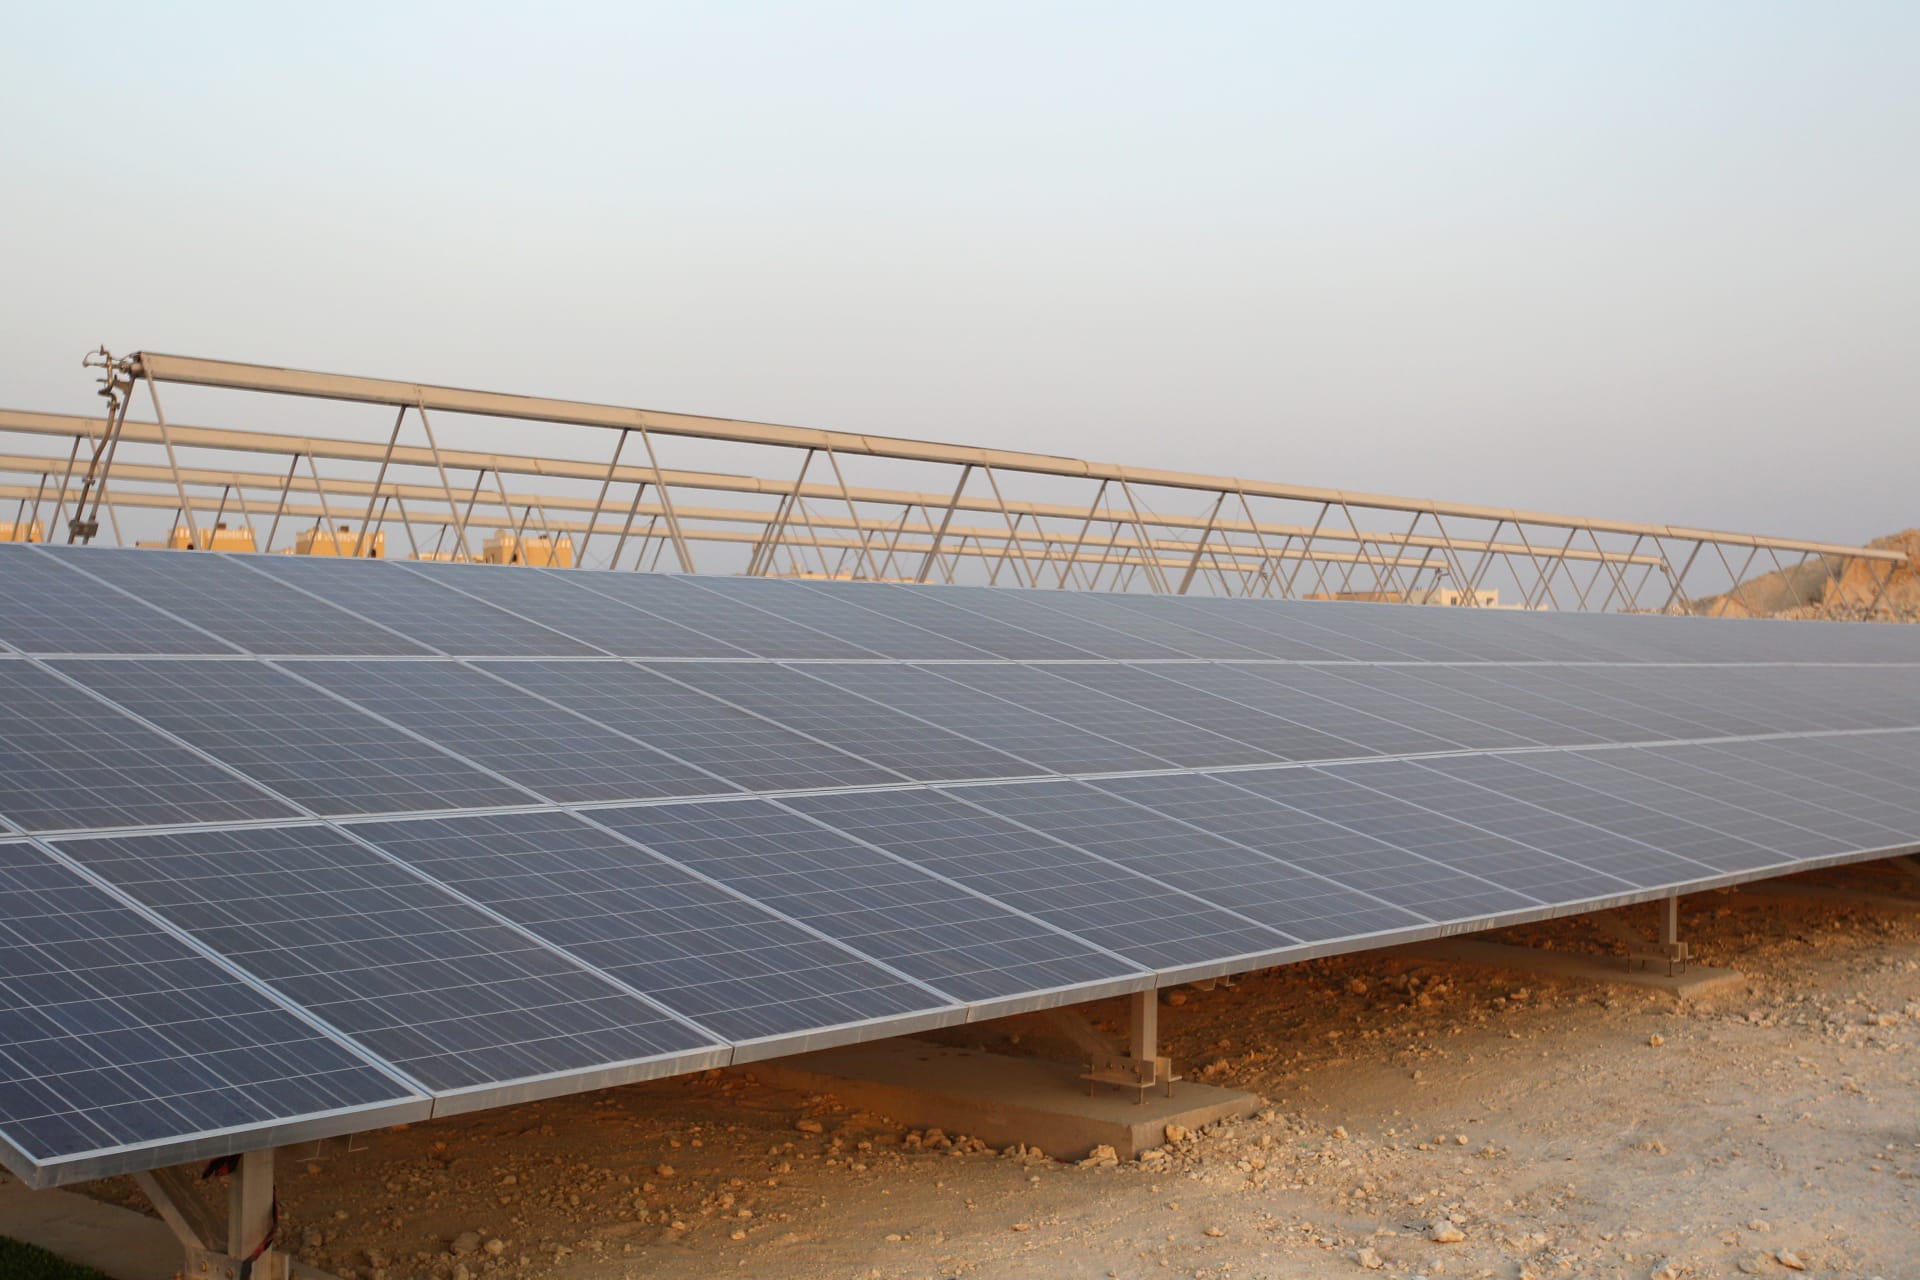 قطر توقع اتفاقية لبناء أول محطة طاقة شمسية بقيمة 467 مليون دولار